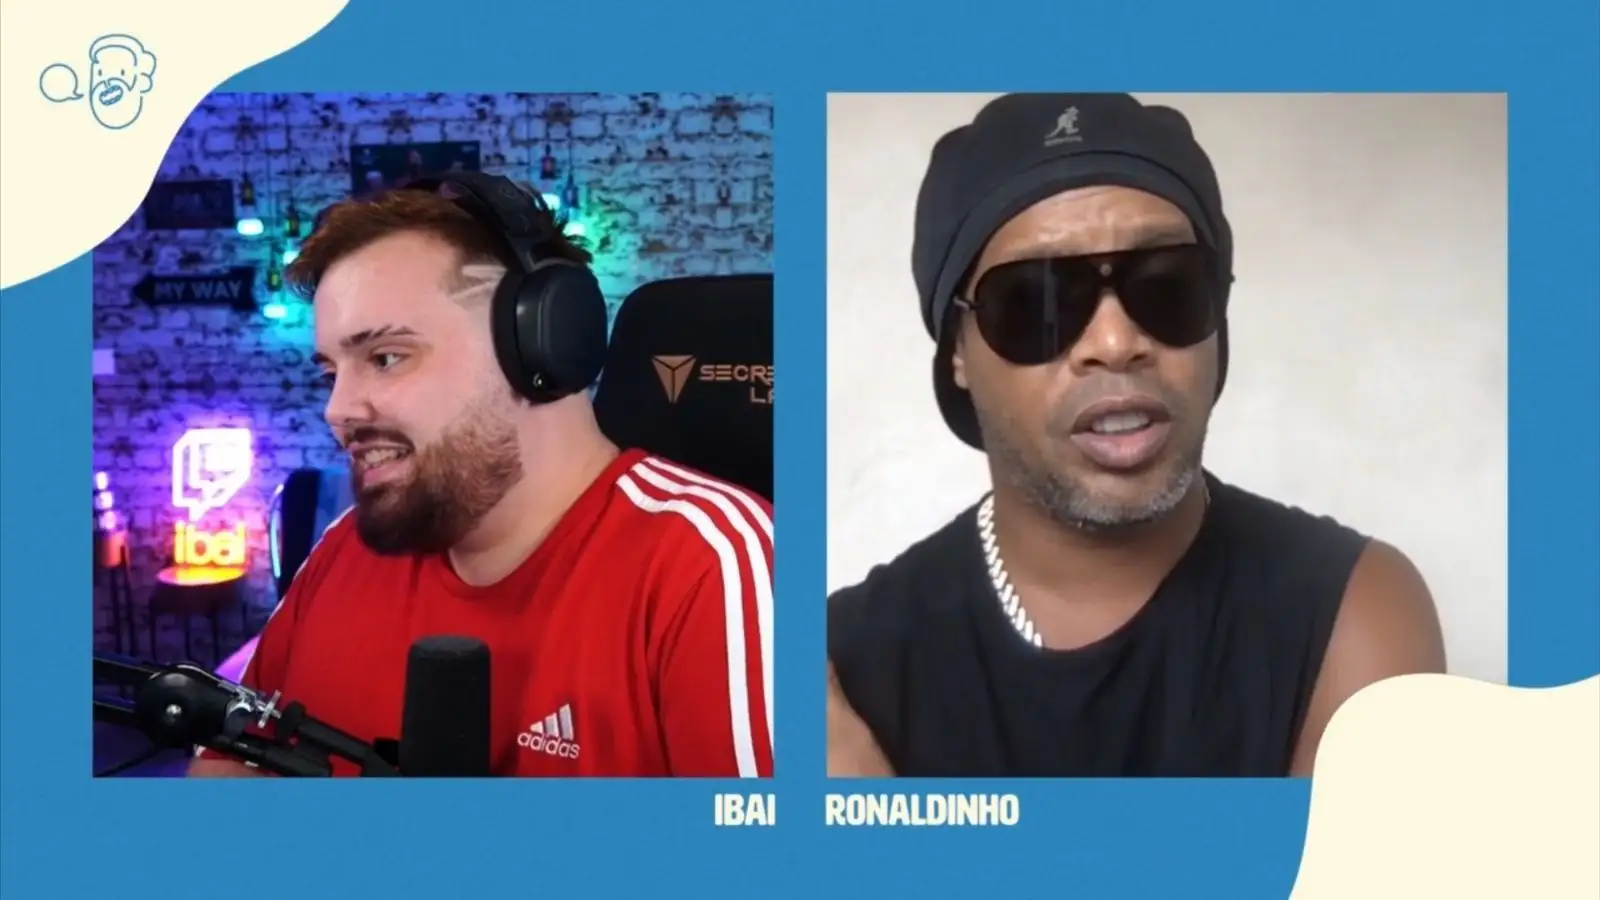 La charla entre Ronaldinho y el vasco dio mucho de sí